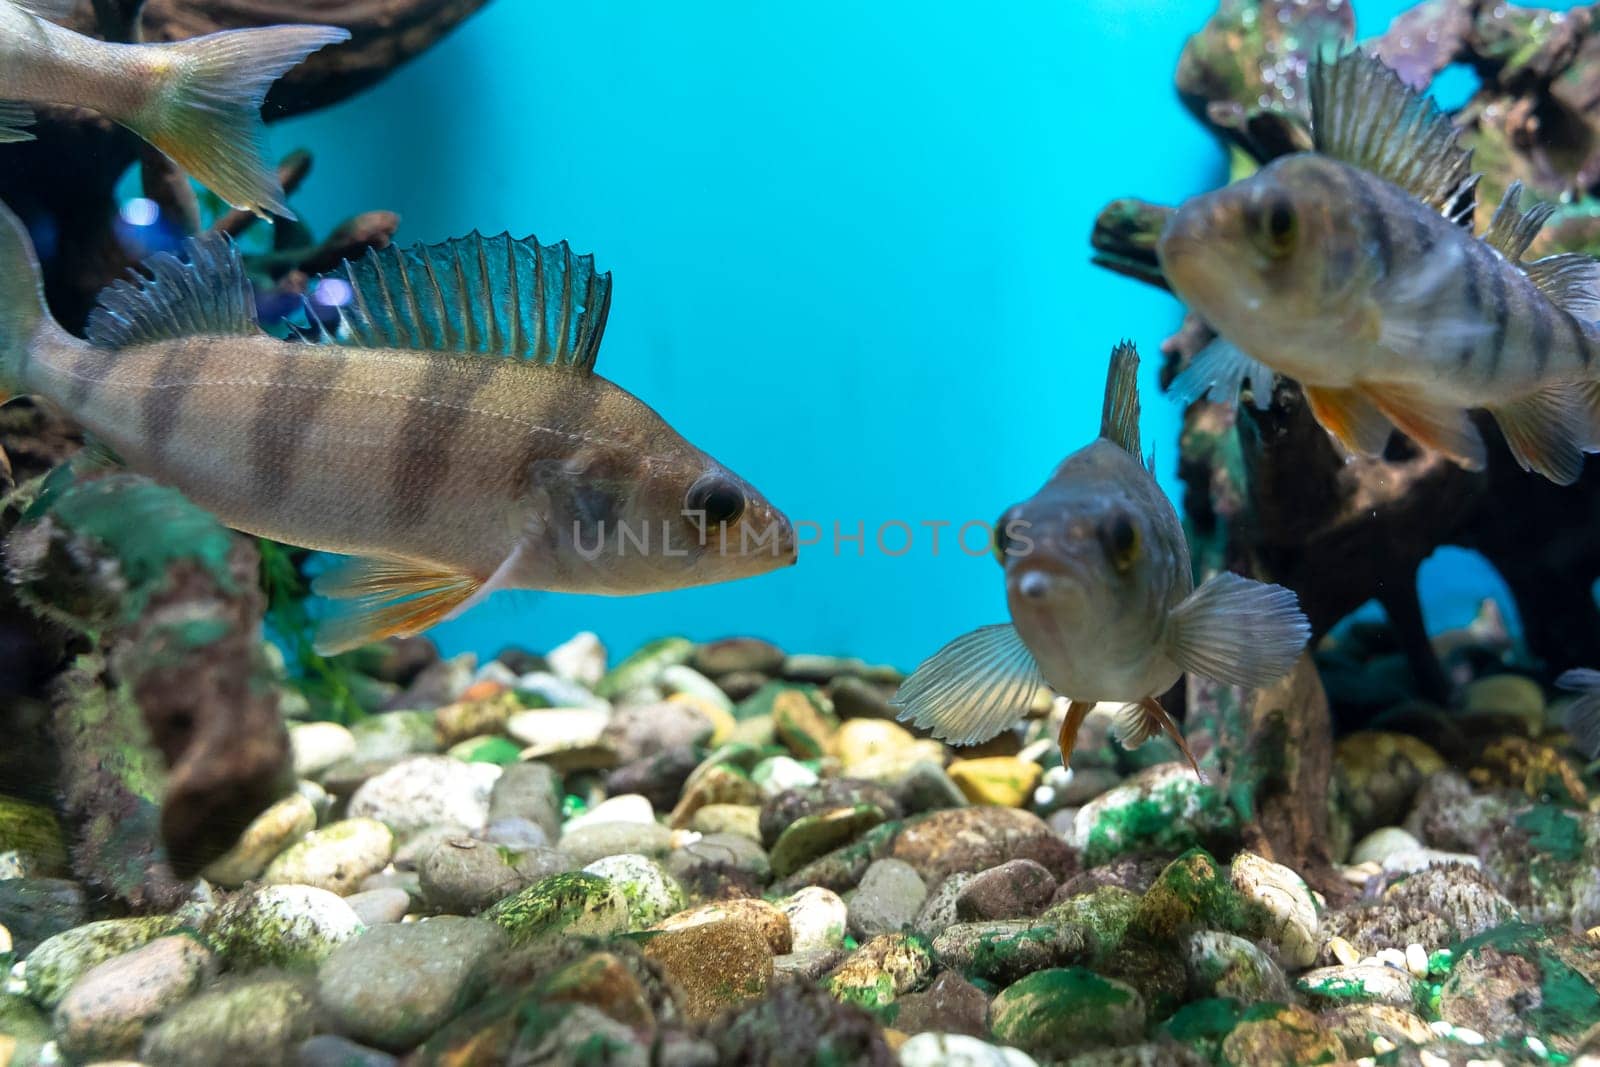 striped fish perch swim in the aquarium. Perca fluviatilis or common perch or European perch